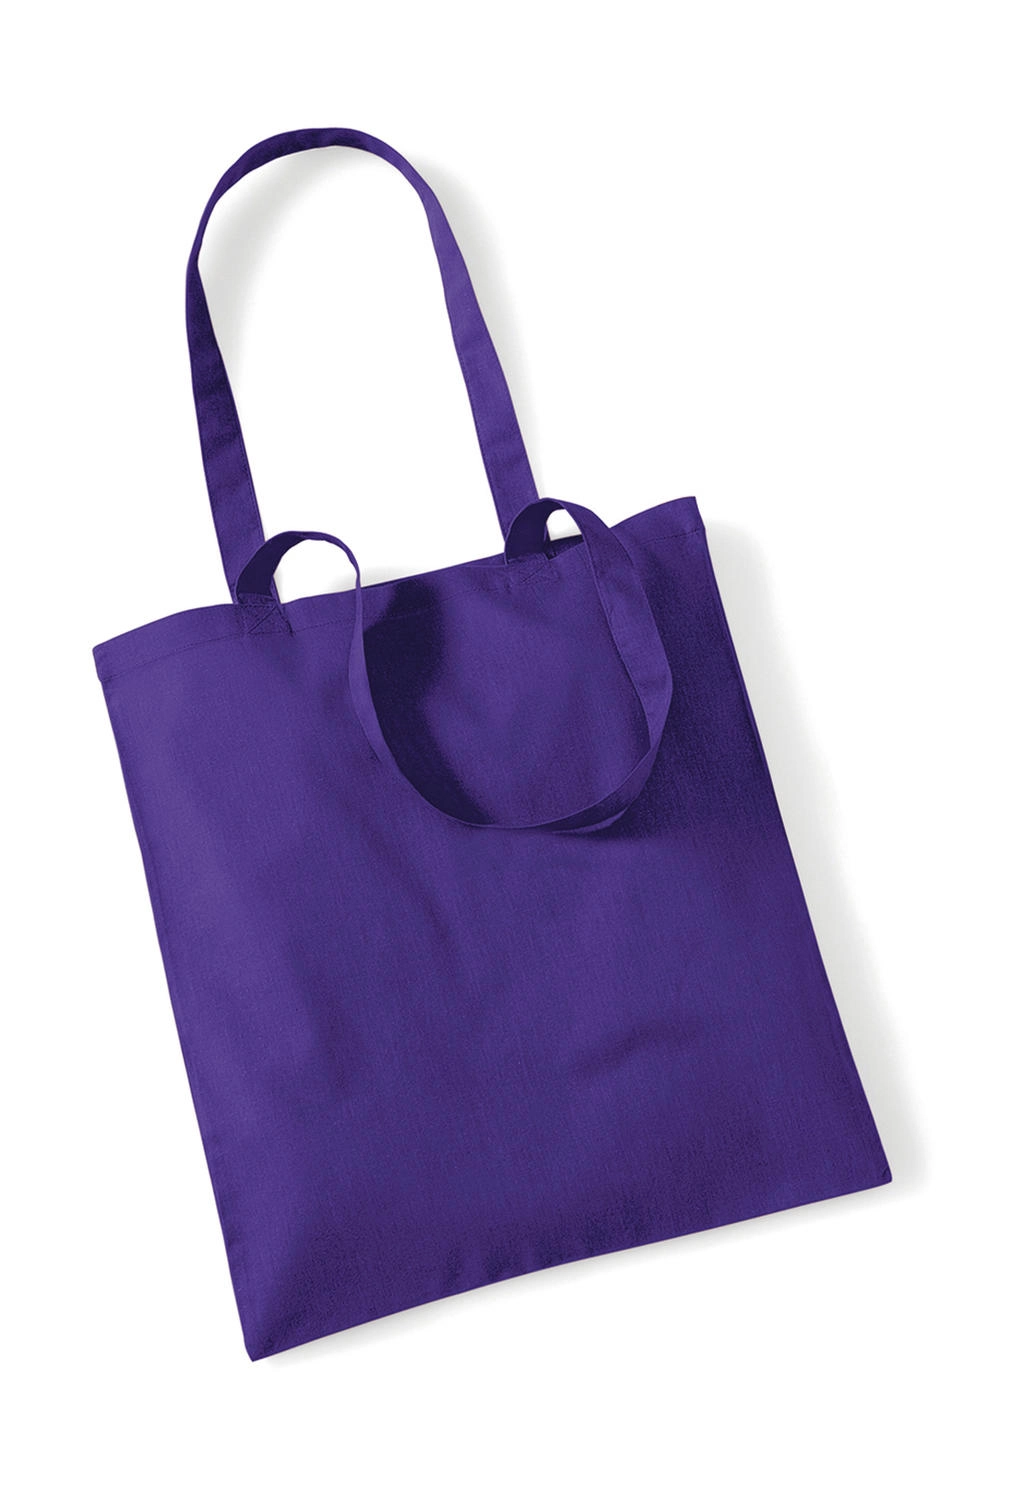 Bag for Life - Long Handles zum Besticken und Bedrucken in der Farbe Purple mit Ihren Logo, Schriftzug oder Motiv.